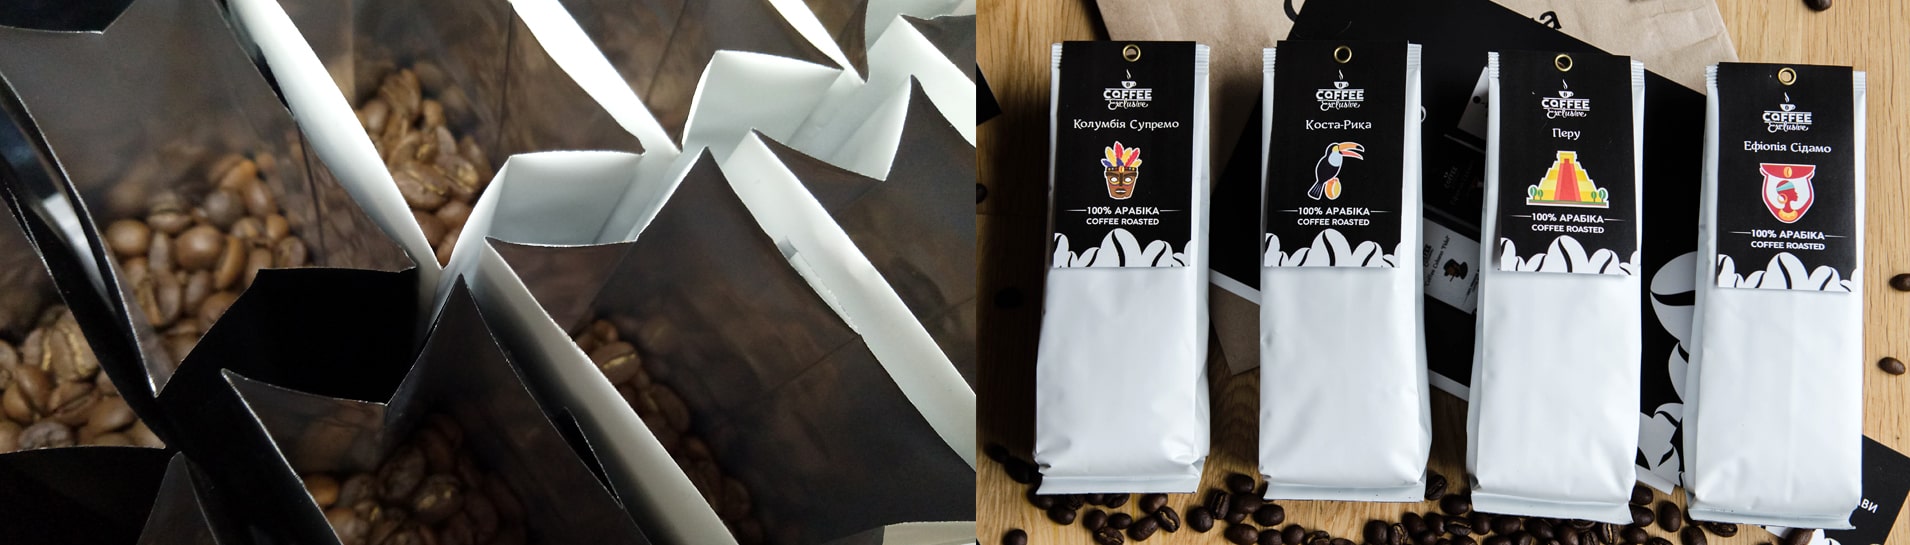 Виды упаковок для экспорта кофе